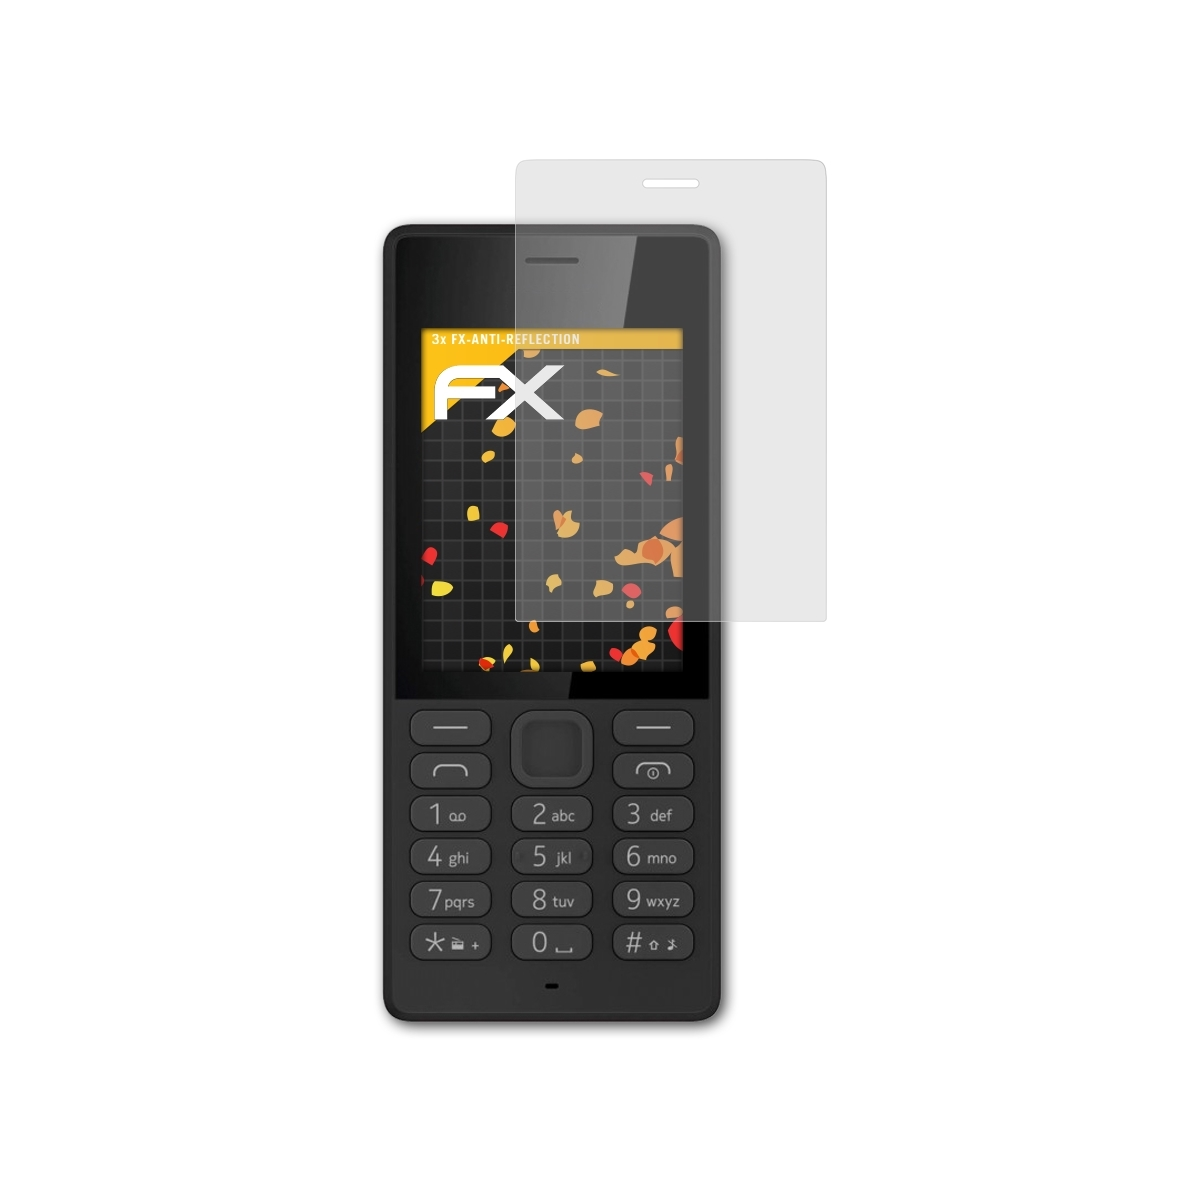 3x Displayschutz(für Nokia 150) FX-Antireflex ATFOLIX